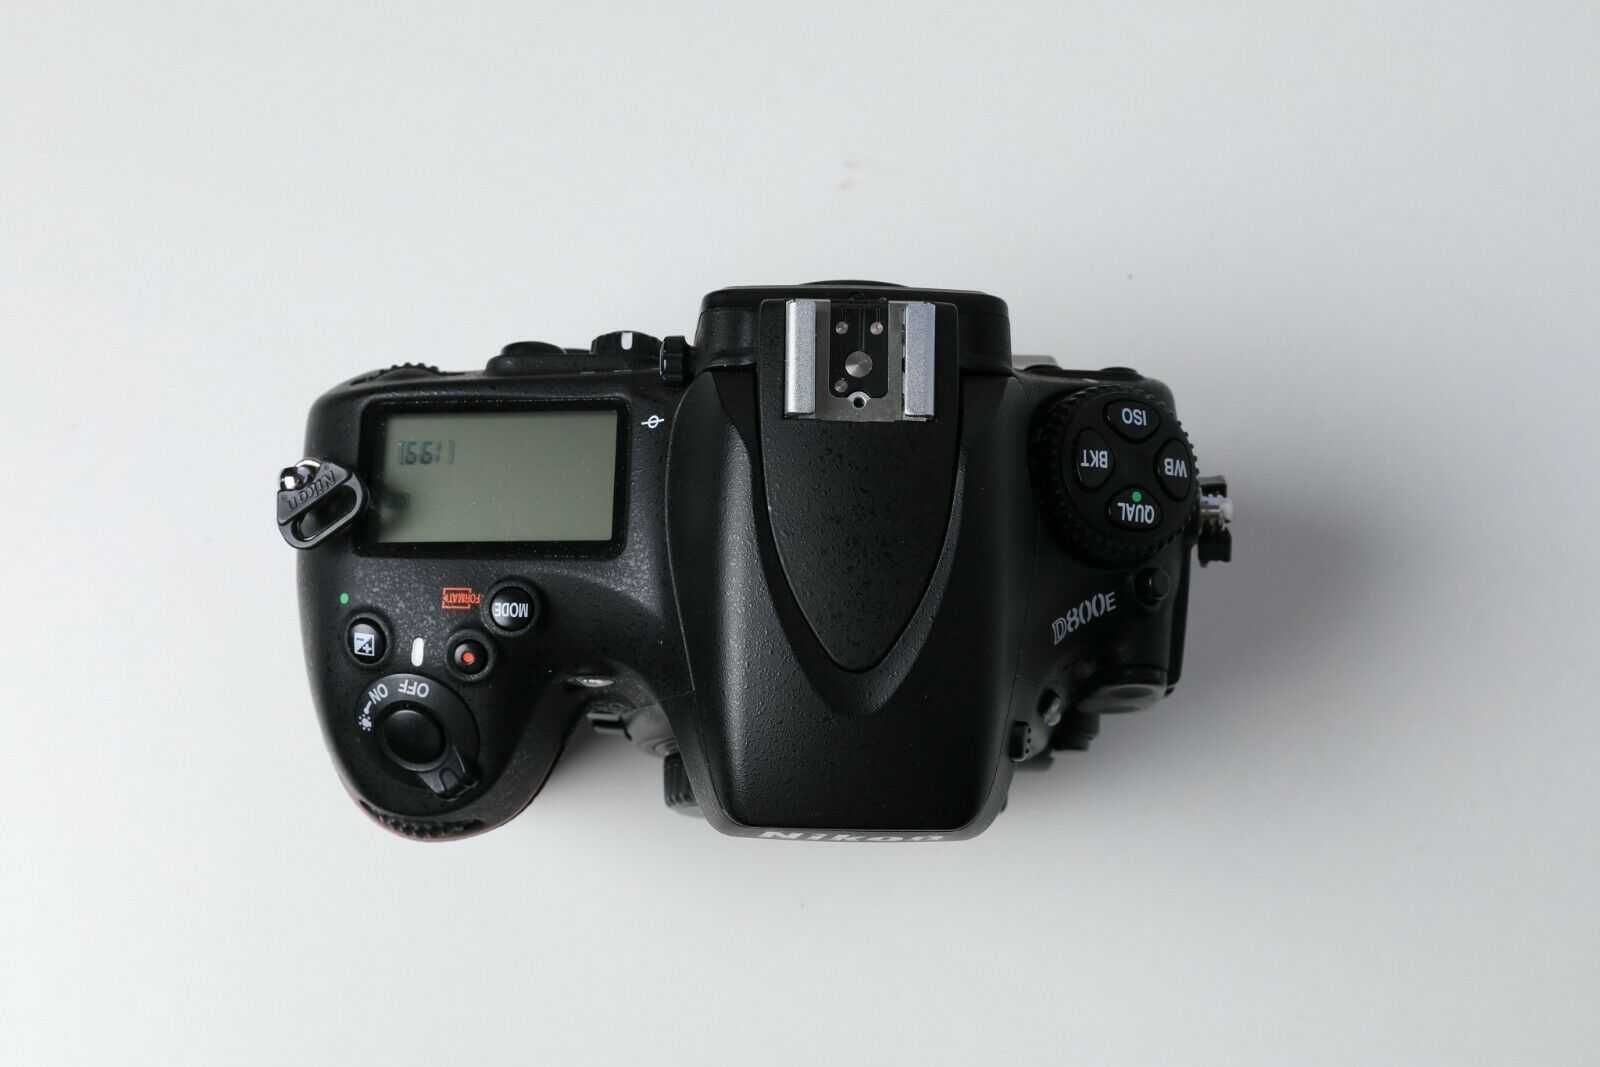 Nikon d800E, com Grip